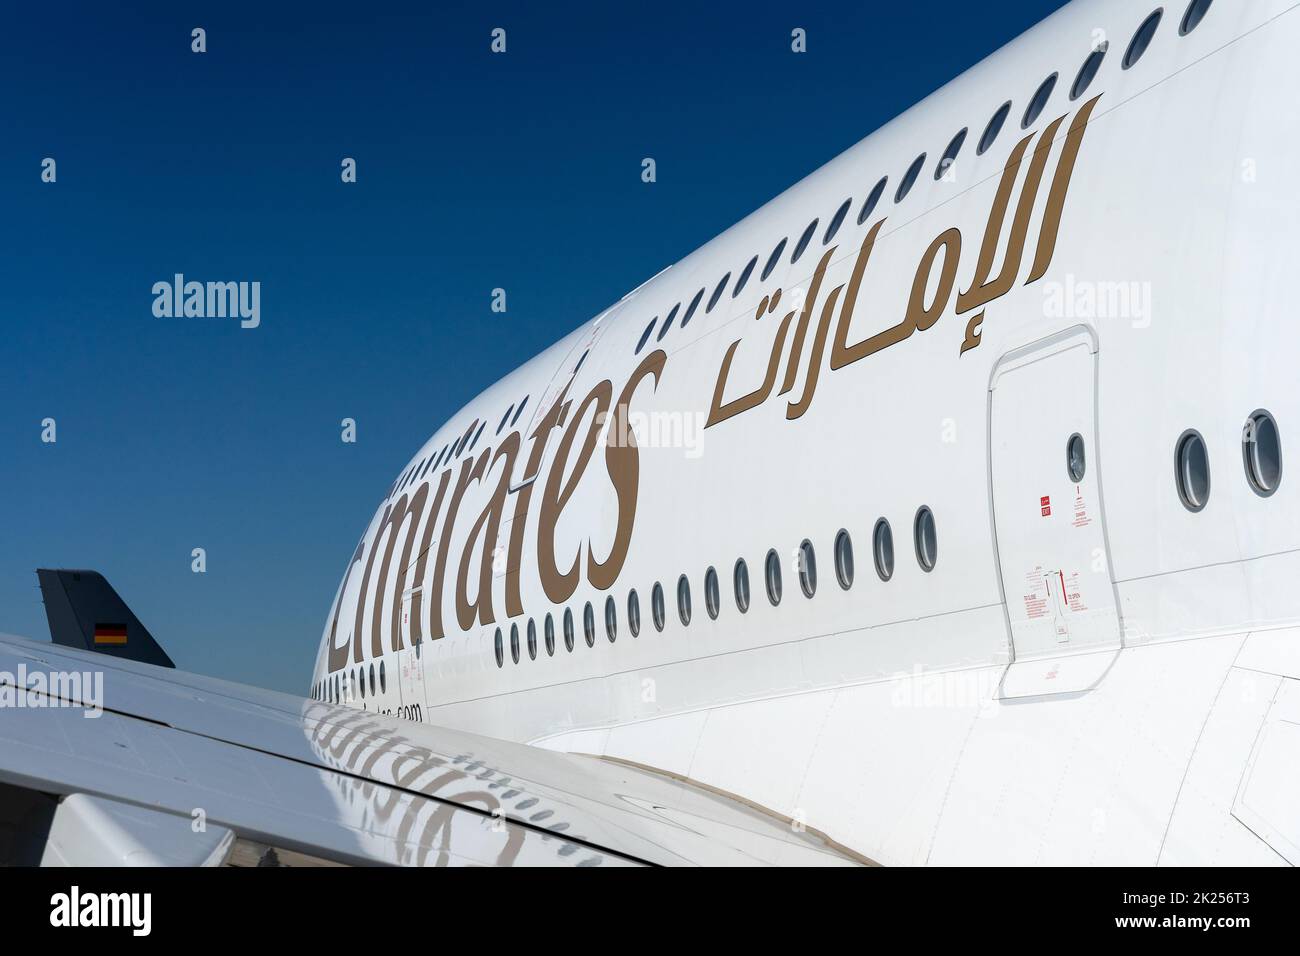 BERLINO, GERMANIA - 23 GIUGNO 2022: Frammento del più grande aereo di linea passeggeri del mondo - Airbus A380-800. Emirates Airline. Mostra Ila Berlin ai Foto Stock